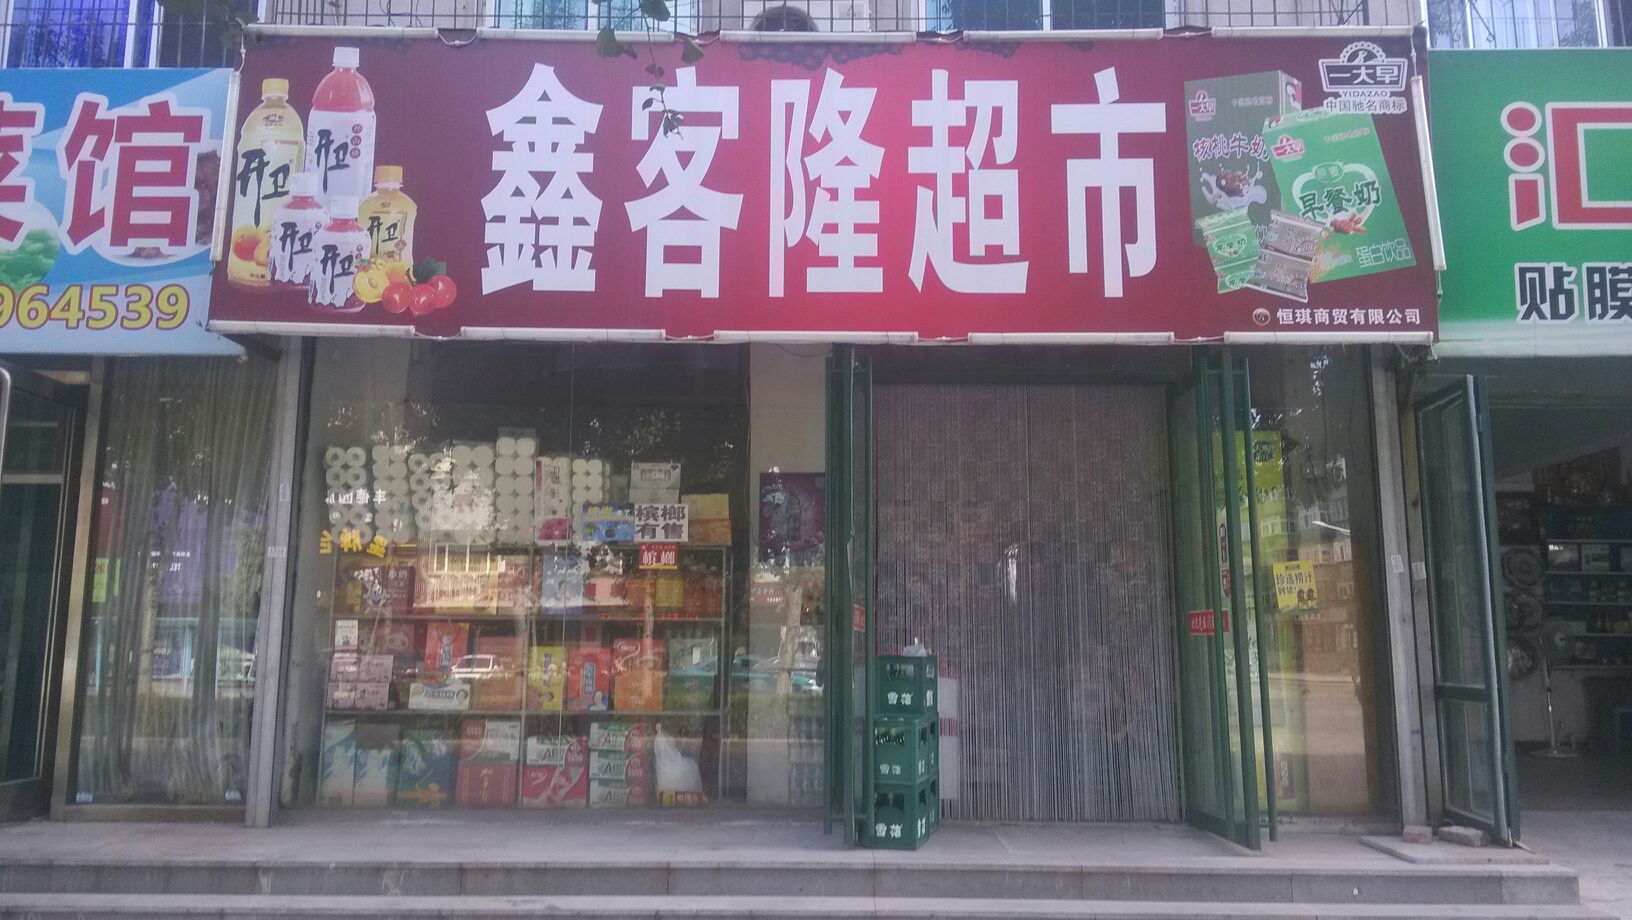 鑫客隆超市(新华路店)